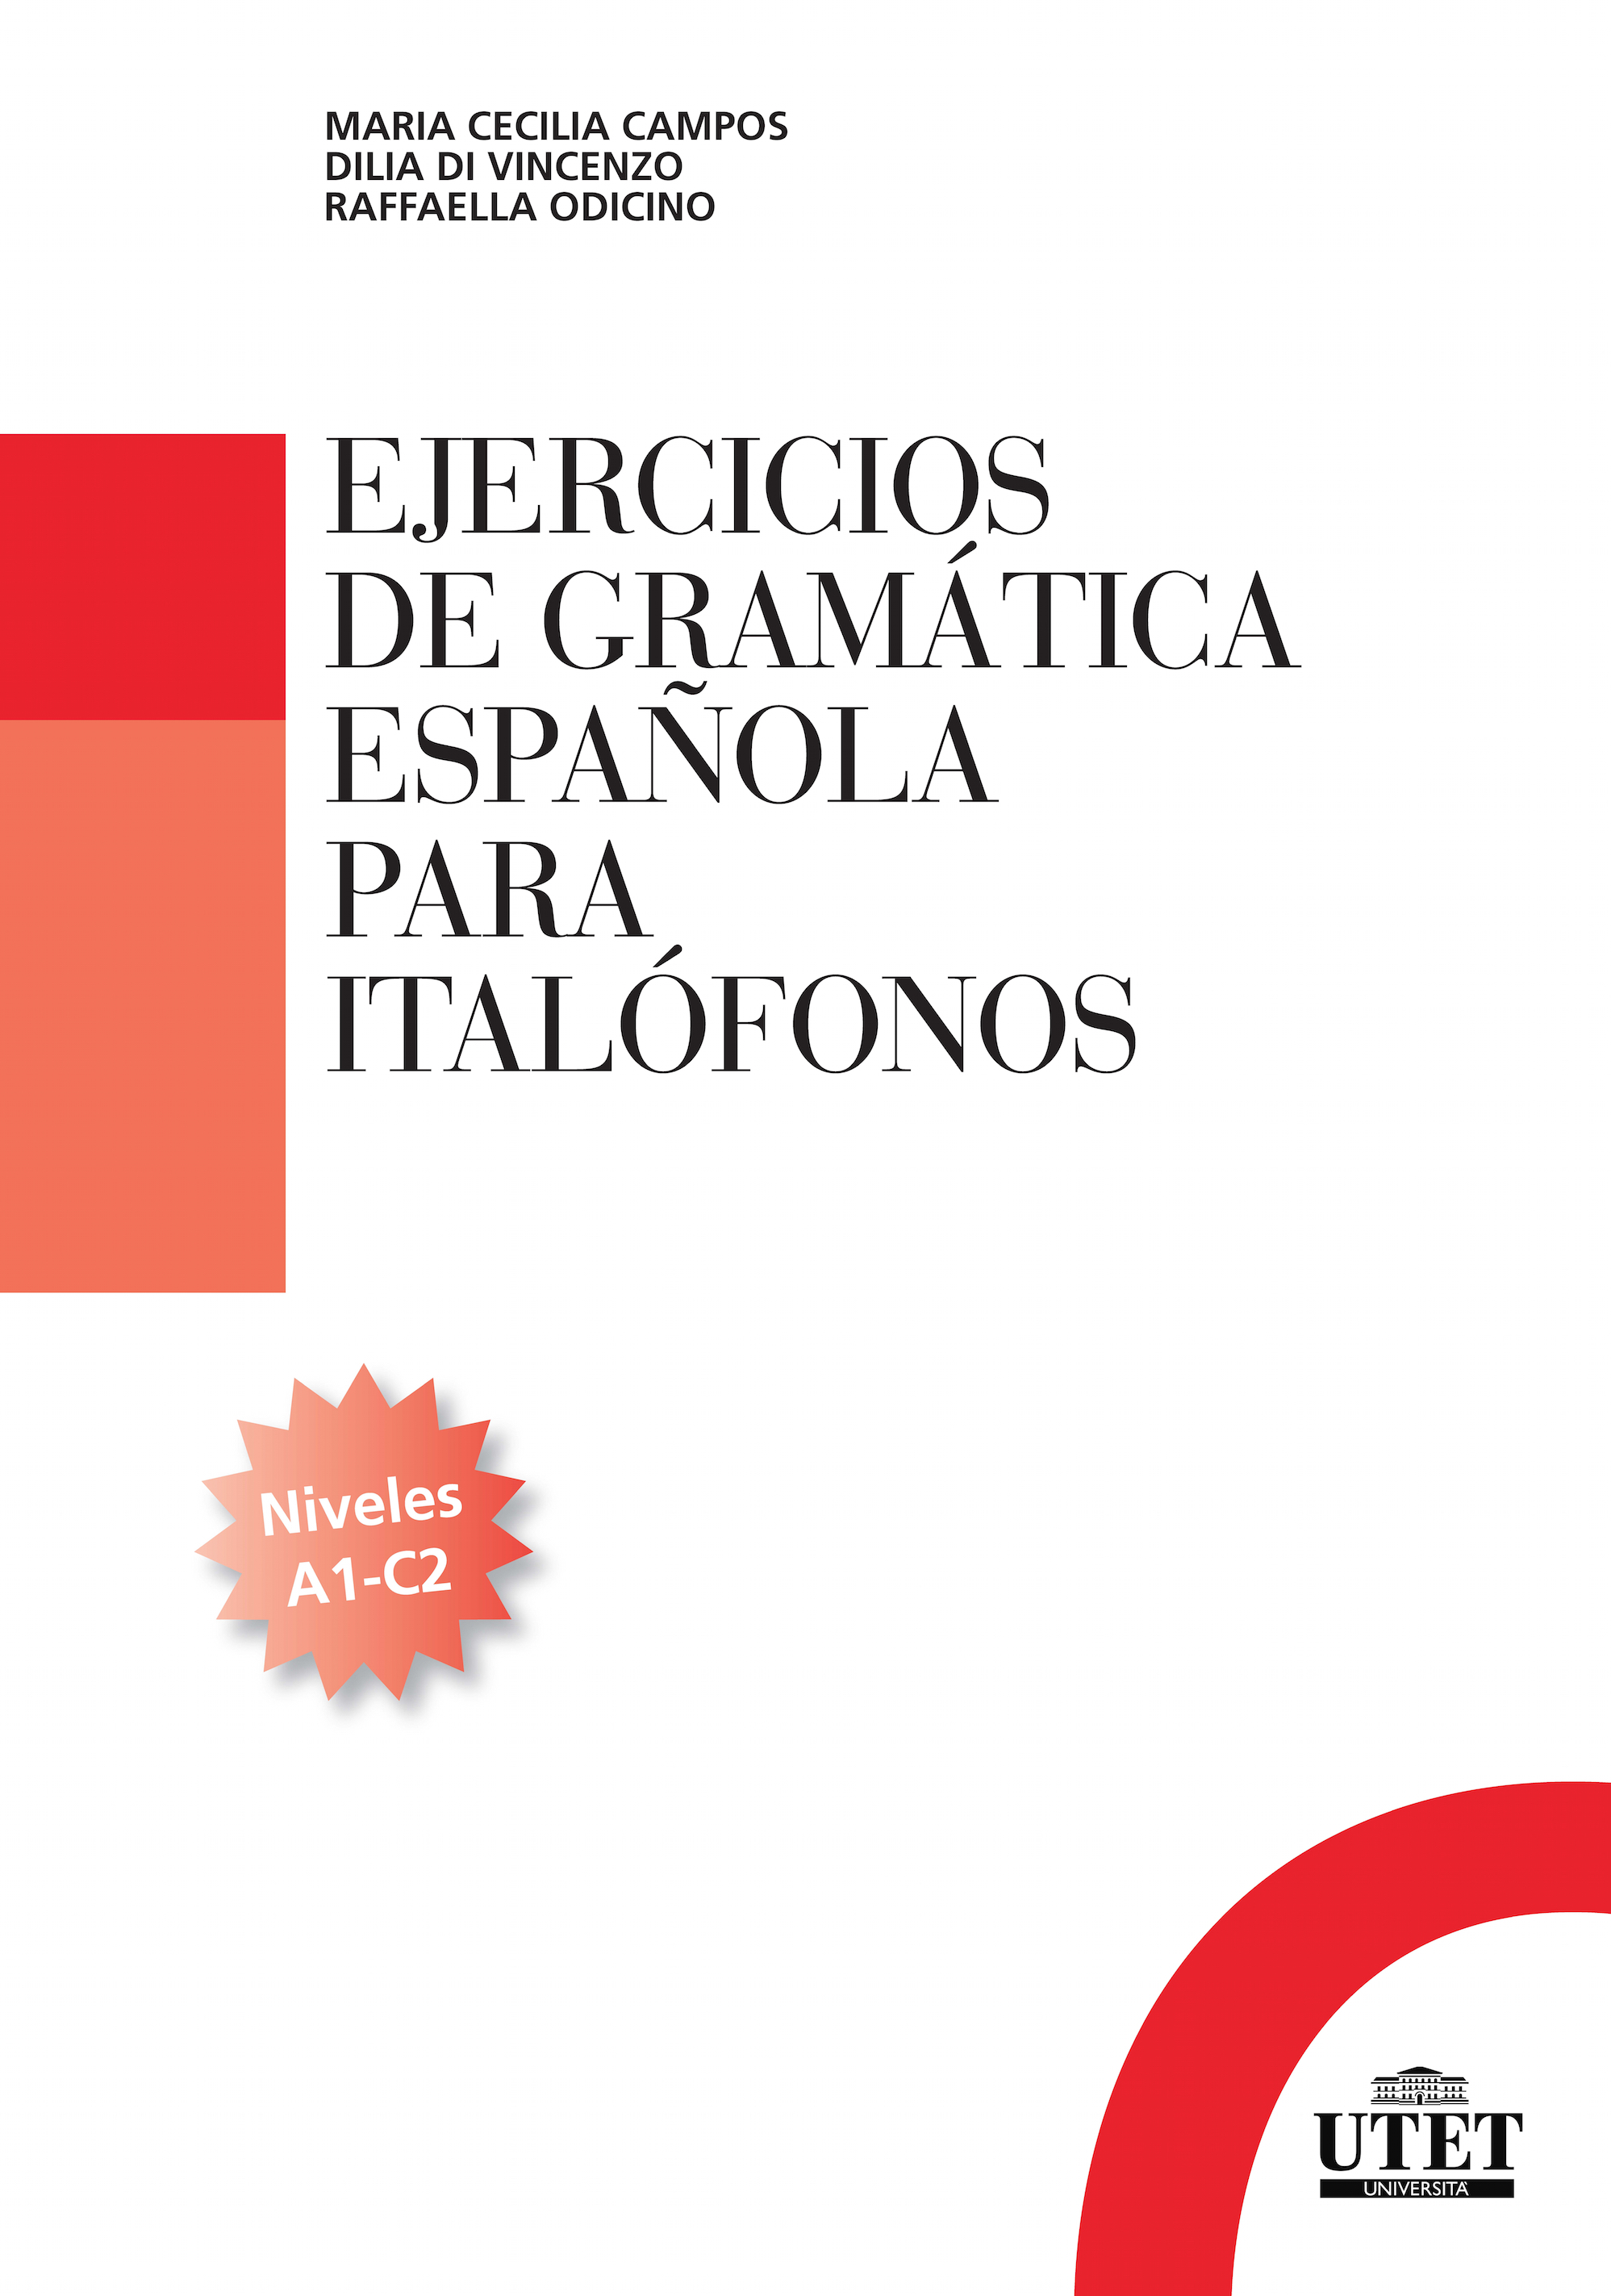 Ejercicios de gramática española para italófonos